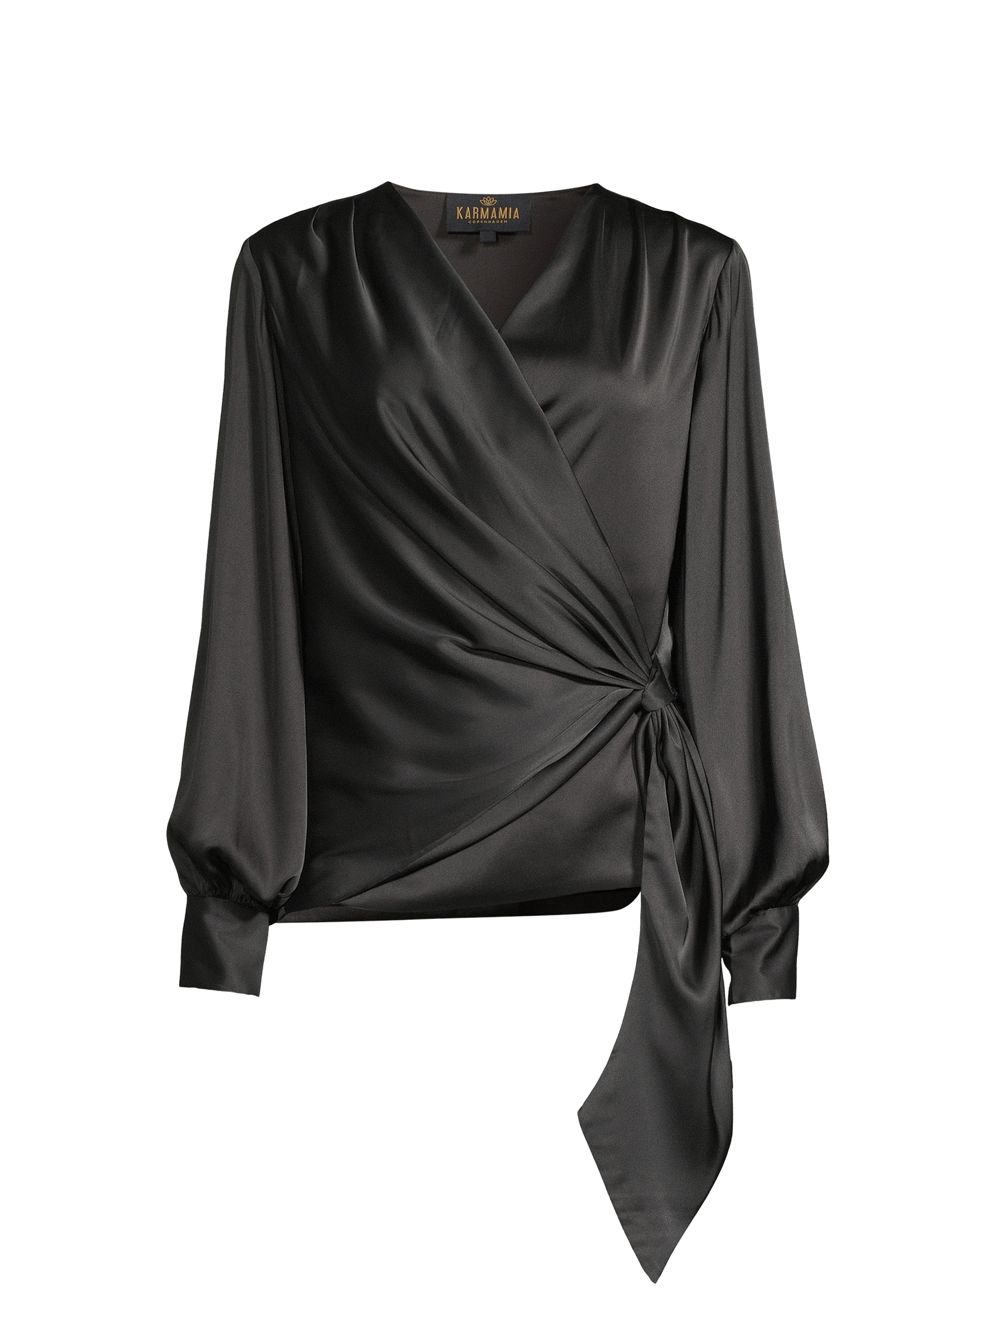 Атласная блузка с запахом Ines Karmamia, черный